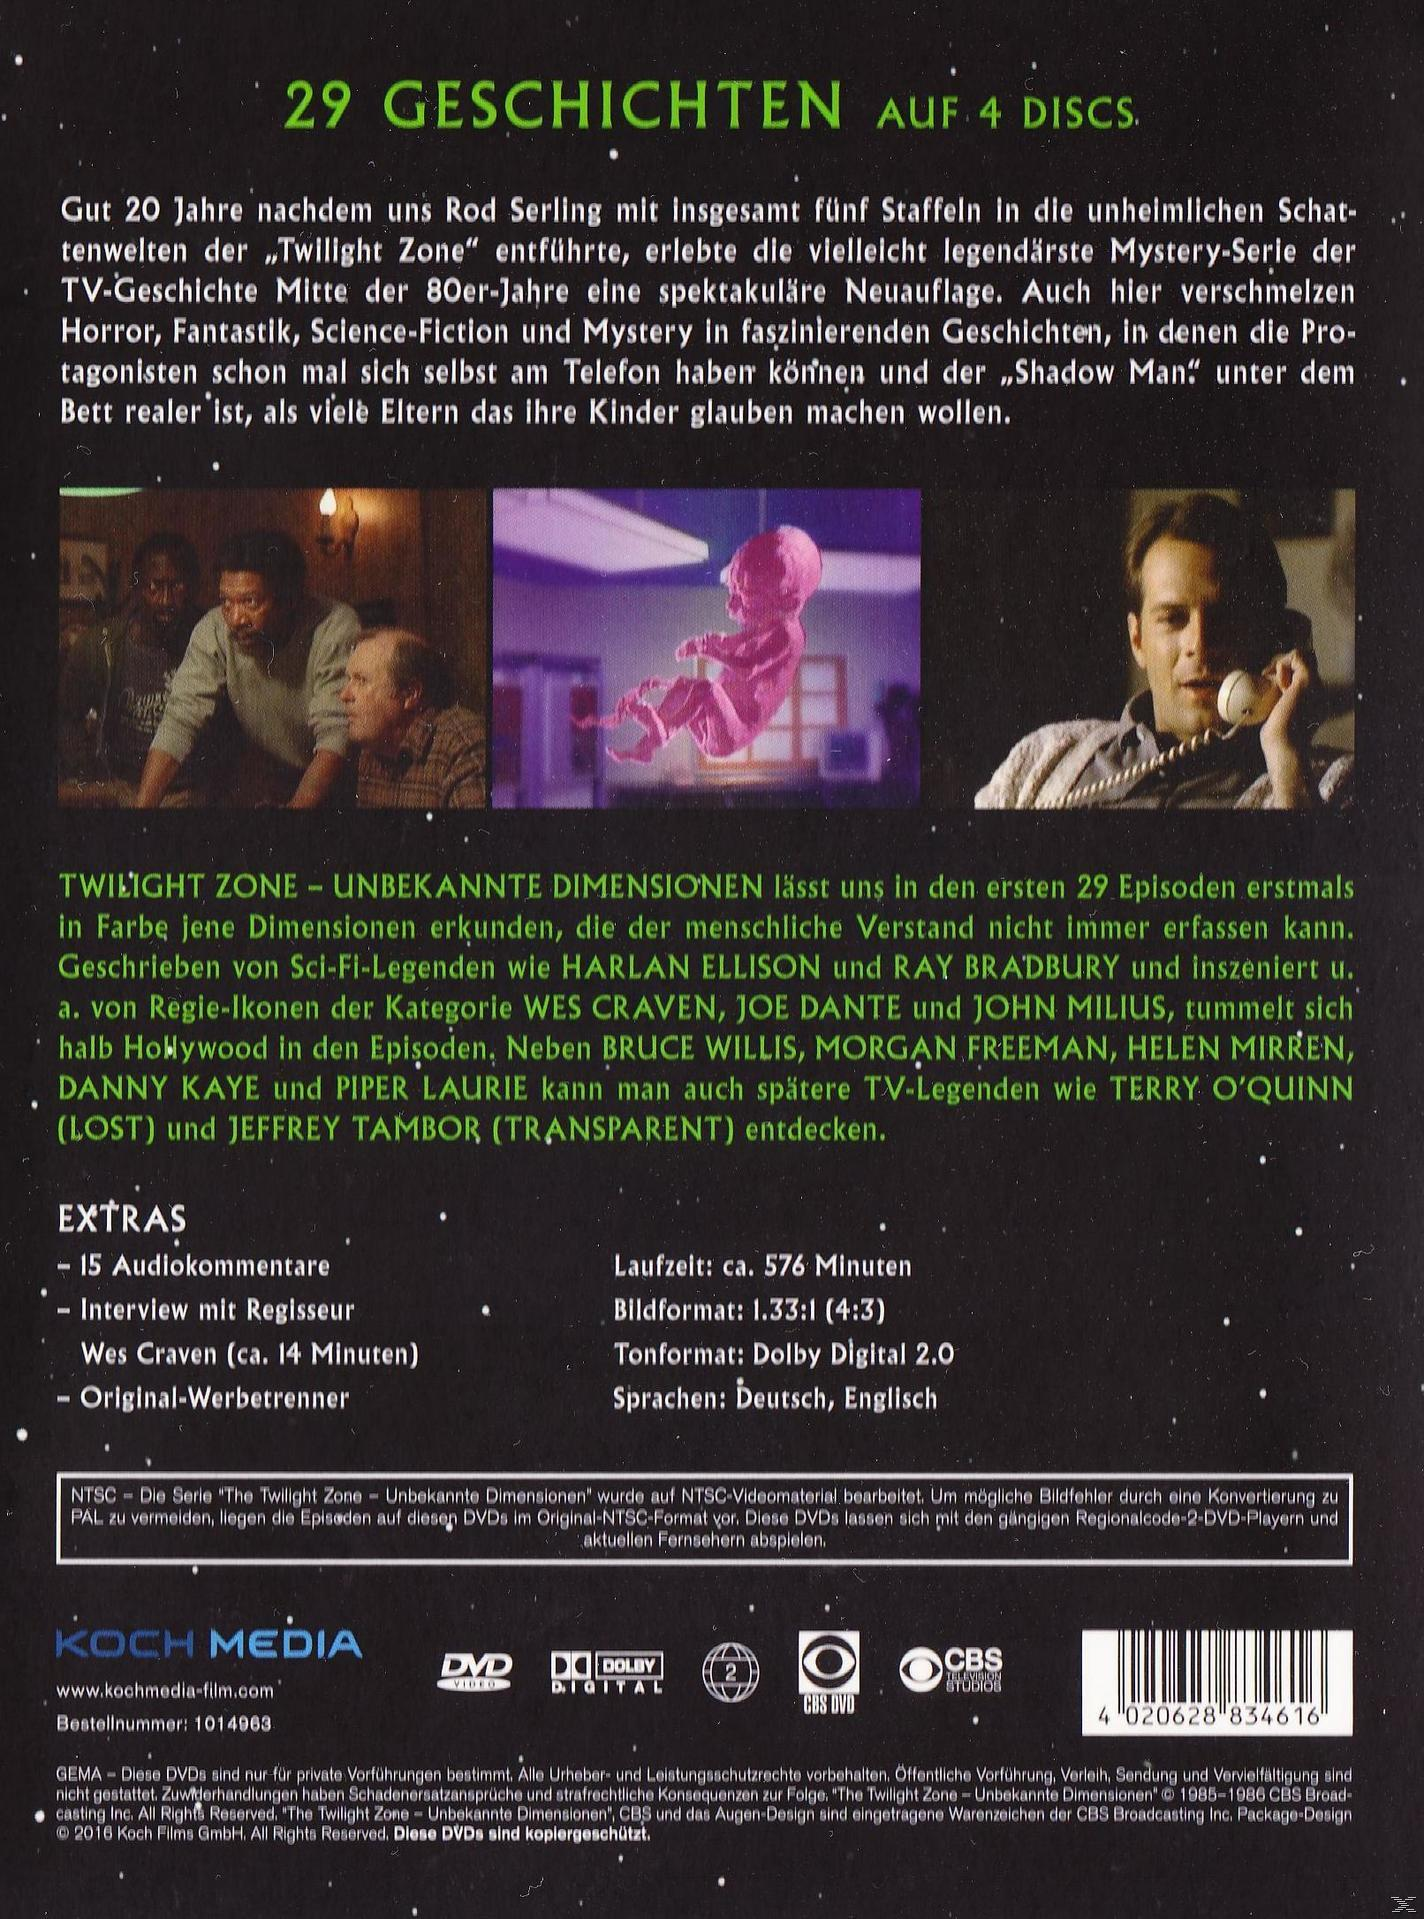 The Twilight Zone DVD 1 - Dimensionen Unbekannte